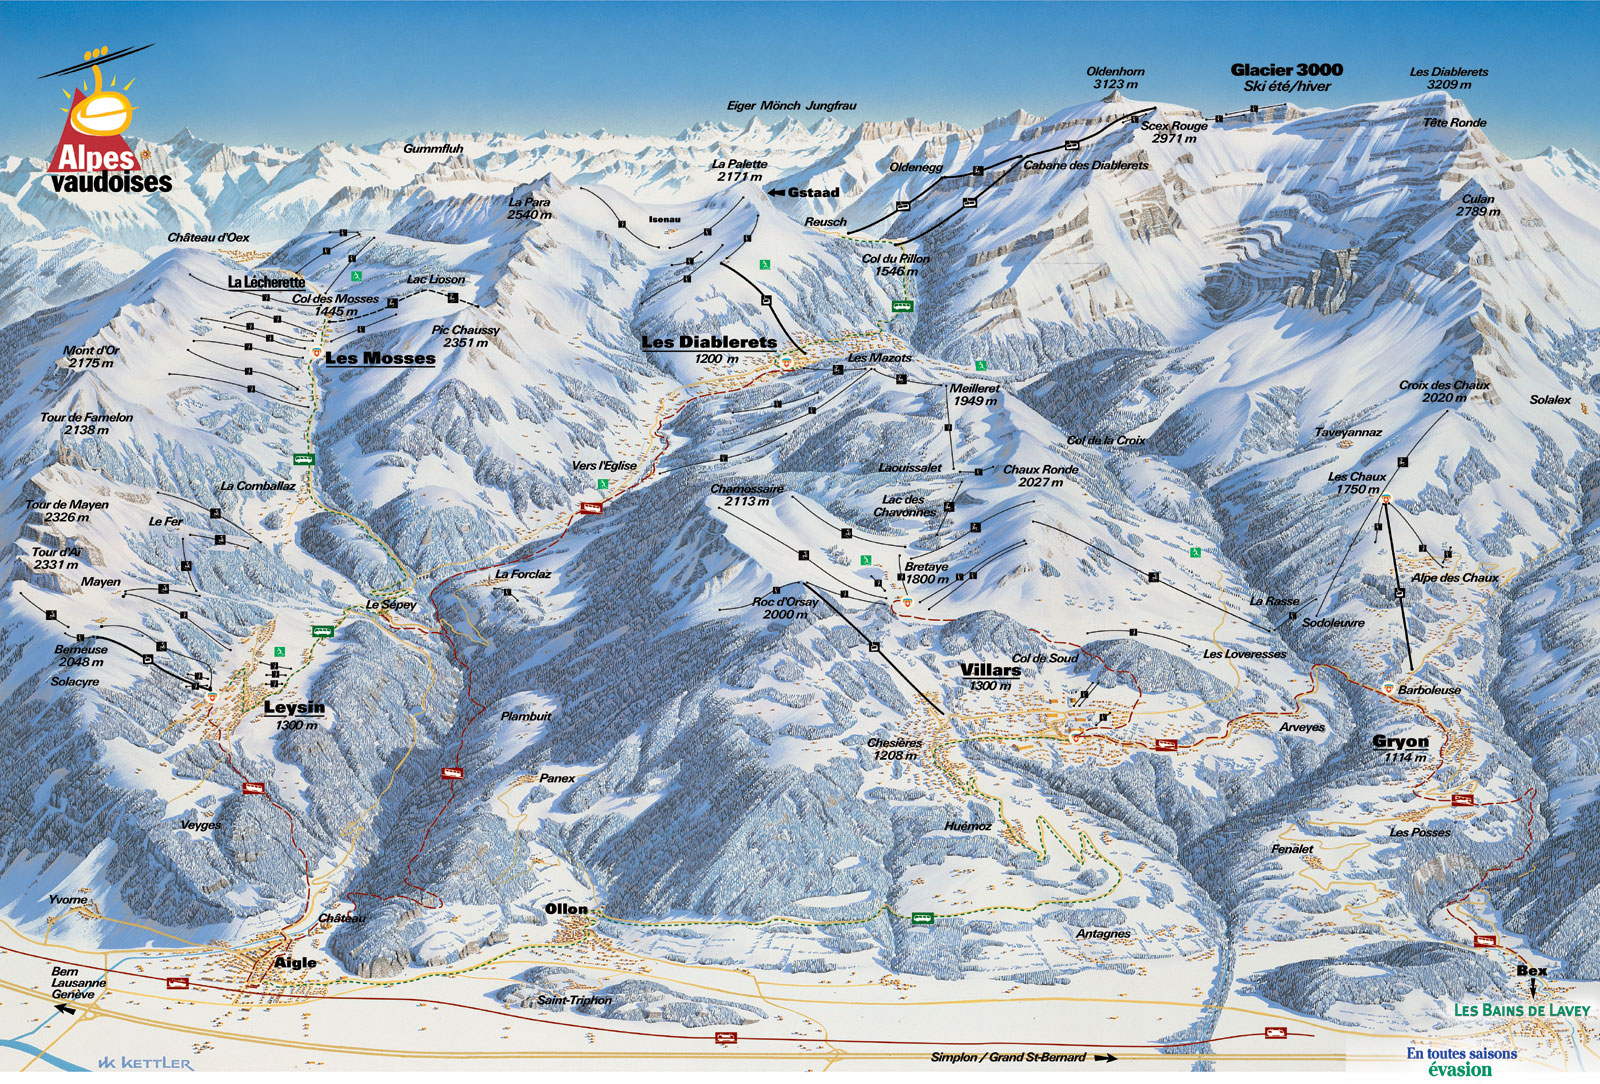 Villars - un domaine de ski de plus de 125 km de ski entre 1'300 et 3'000 mètres